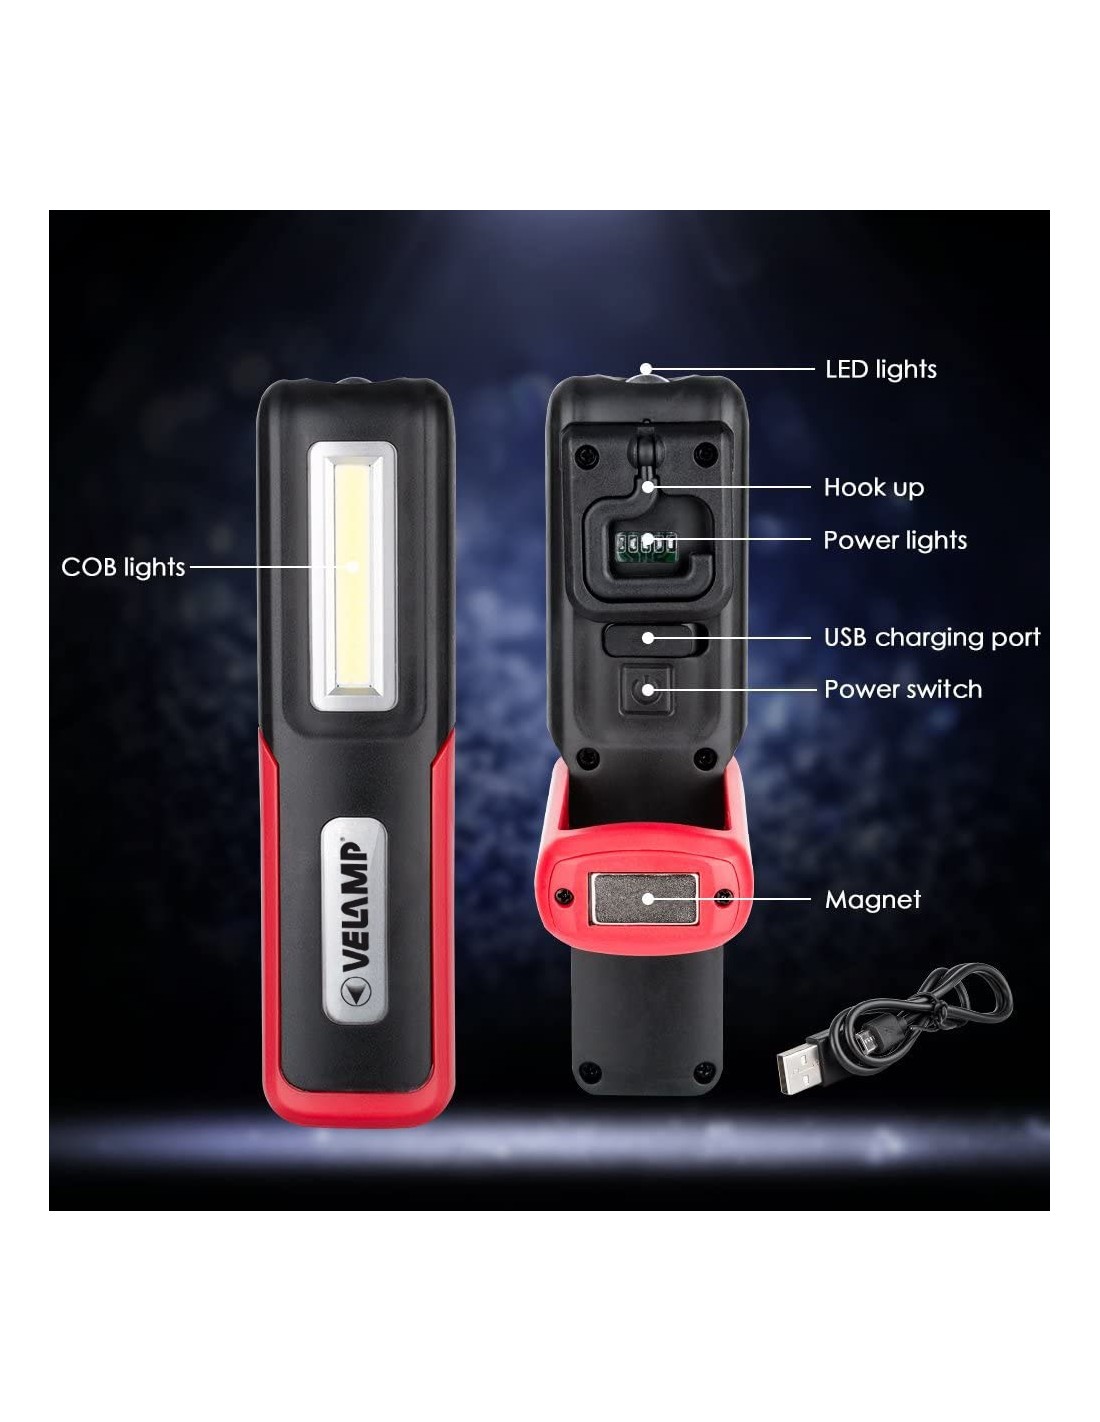 Multifunktionale LED-Arbeitsleuchte, wiederaufladbar per USB, 2in1 Arbeitsleuchte, Panelleuchte und Taschenlampe, mit Magnet und Haken